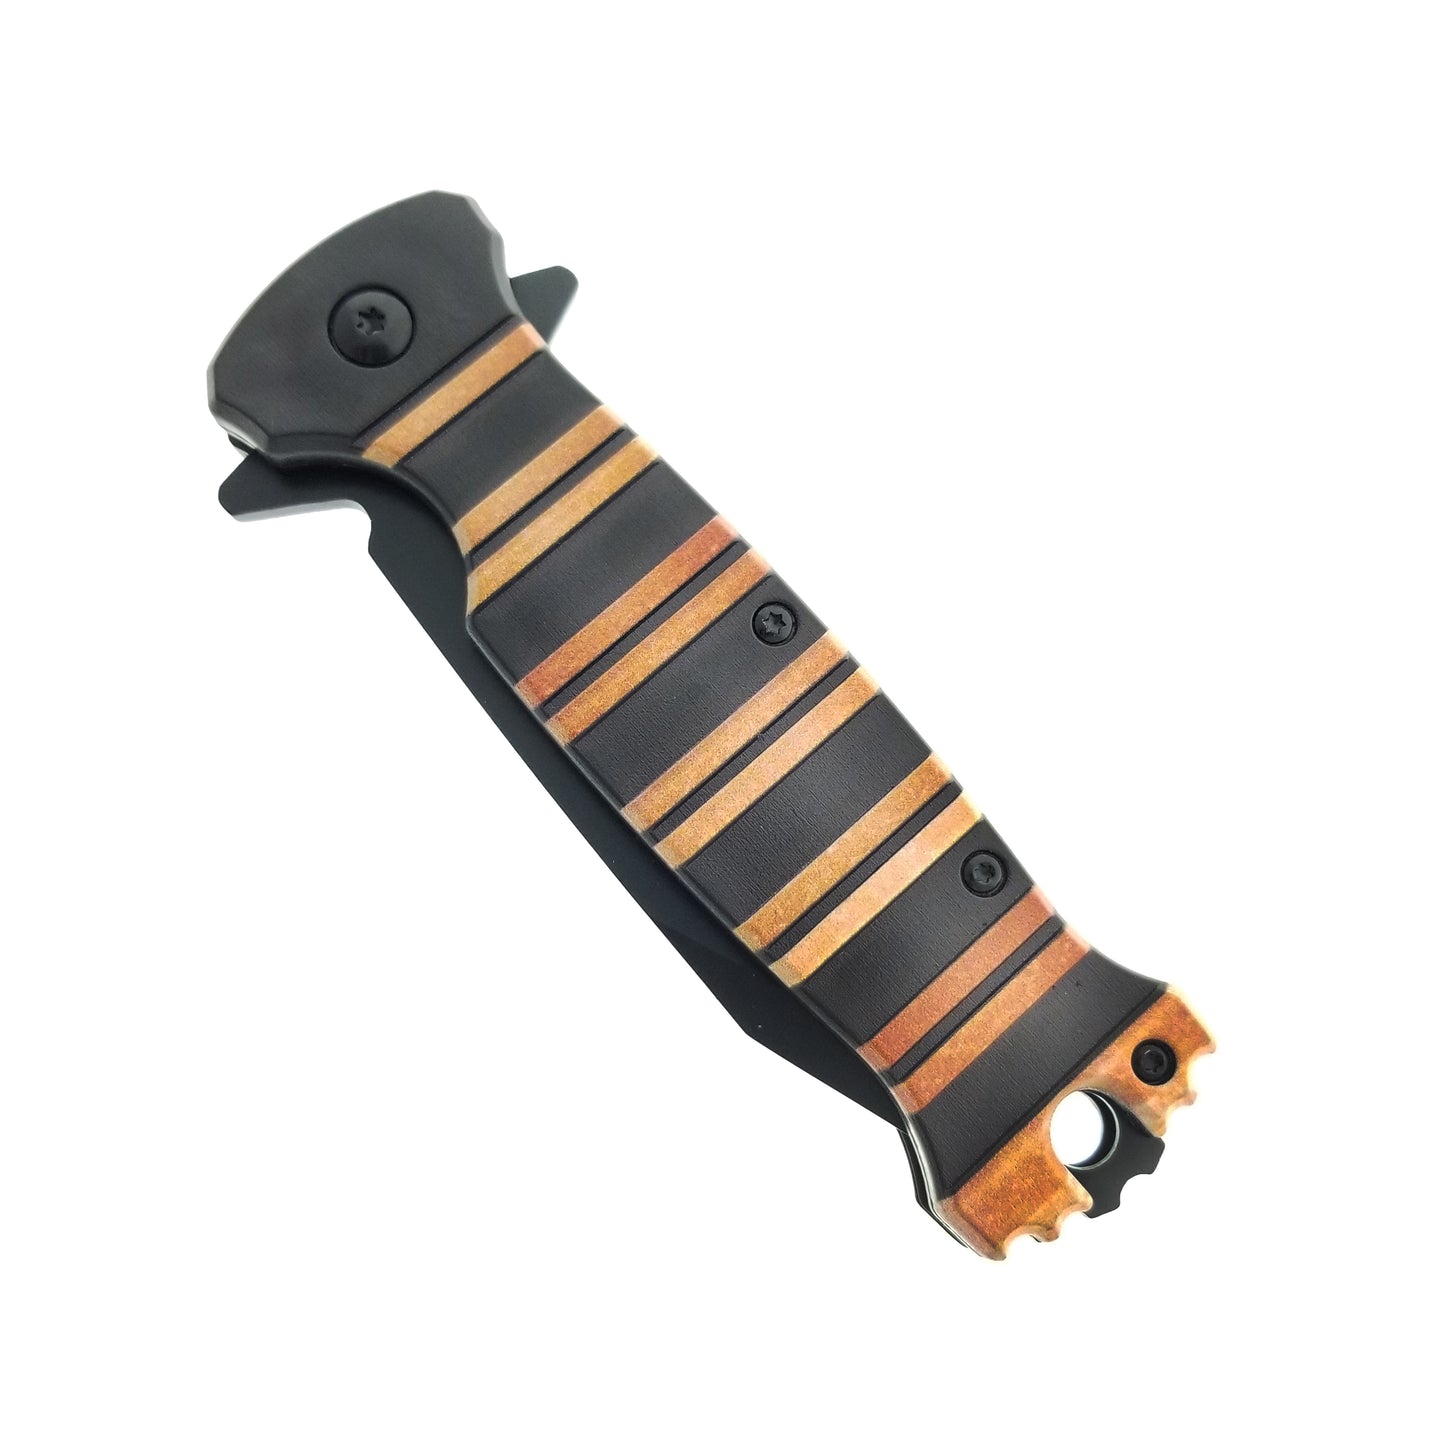 8" Orange and Black Handle Spring Assisted Pocket Knife w/ Belt Clip